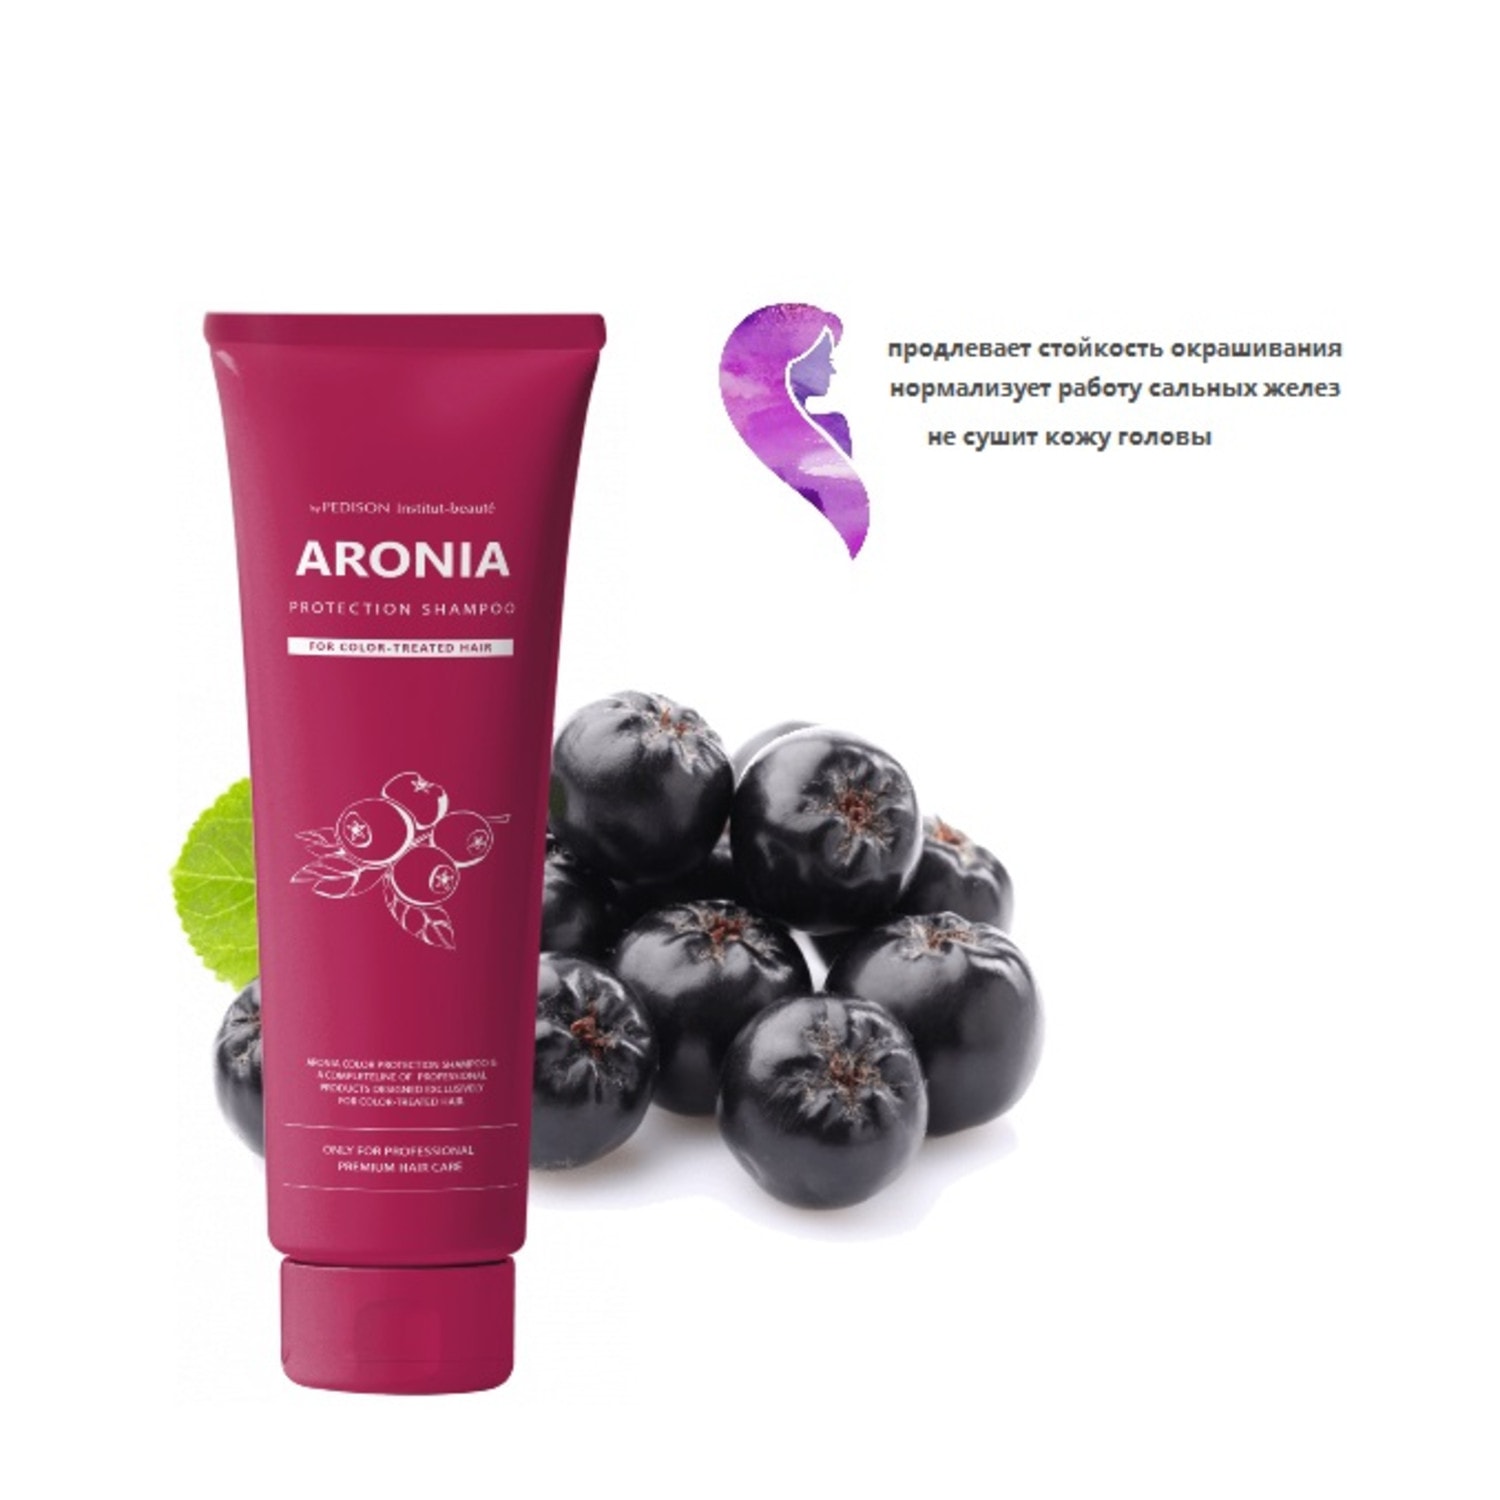 Pedison Institute-beaut Aronia Color Protection Shampoo Шампунь для окрашенных и тонированных волос, 100 мл. / 004839